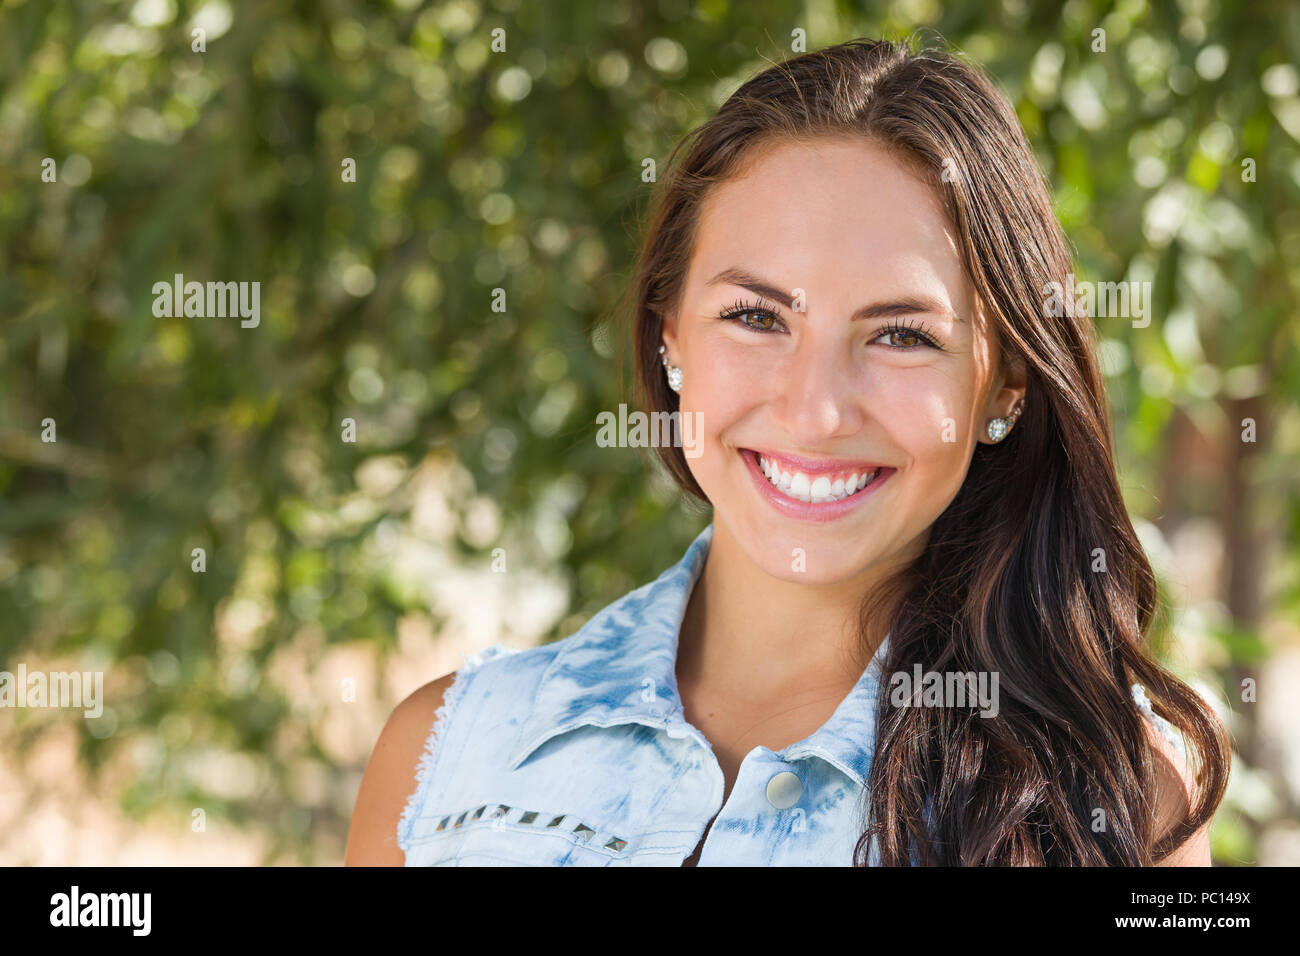 Attraente sorridente razza mista ragazza ritratto all'esterno. Foto Stock